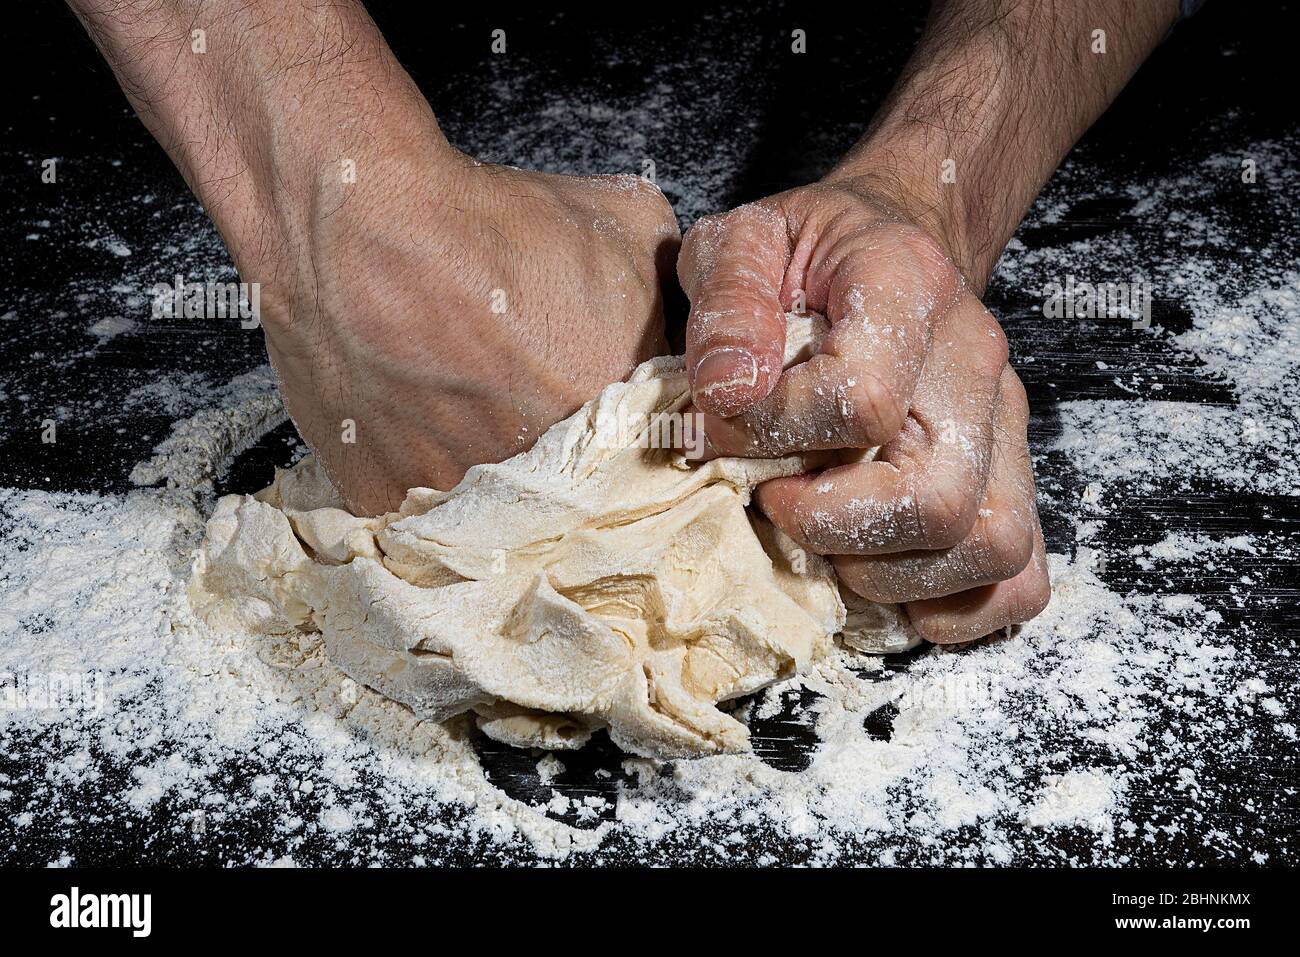 Puño de un hombre presionando una bola de harina amasada para hacer pan sobre una superficie negra llena de harina Foto de stock